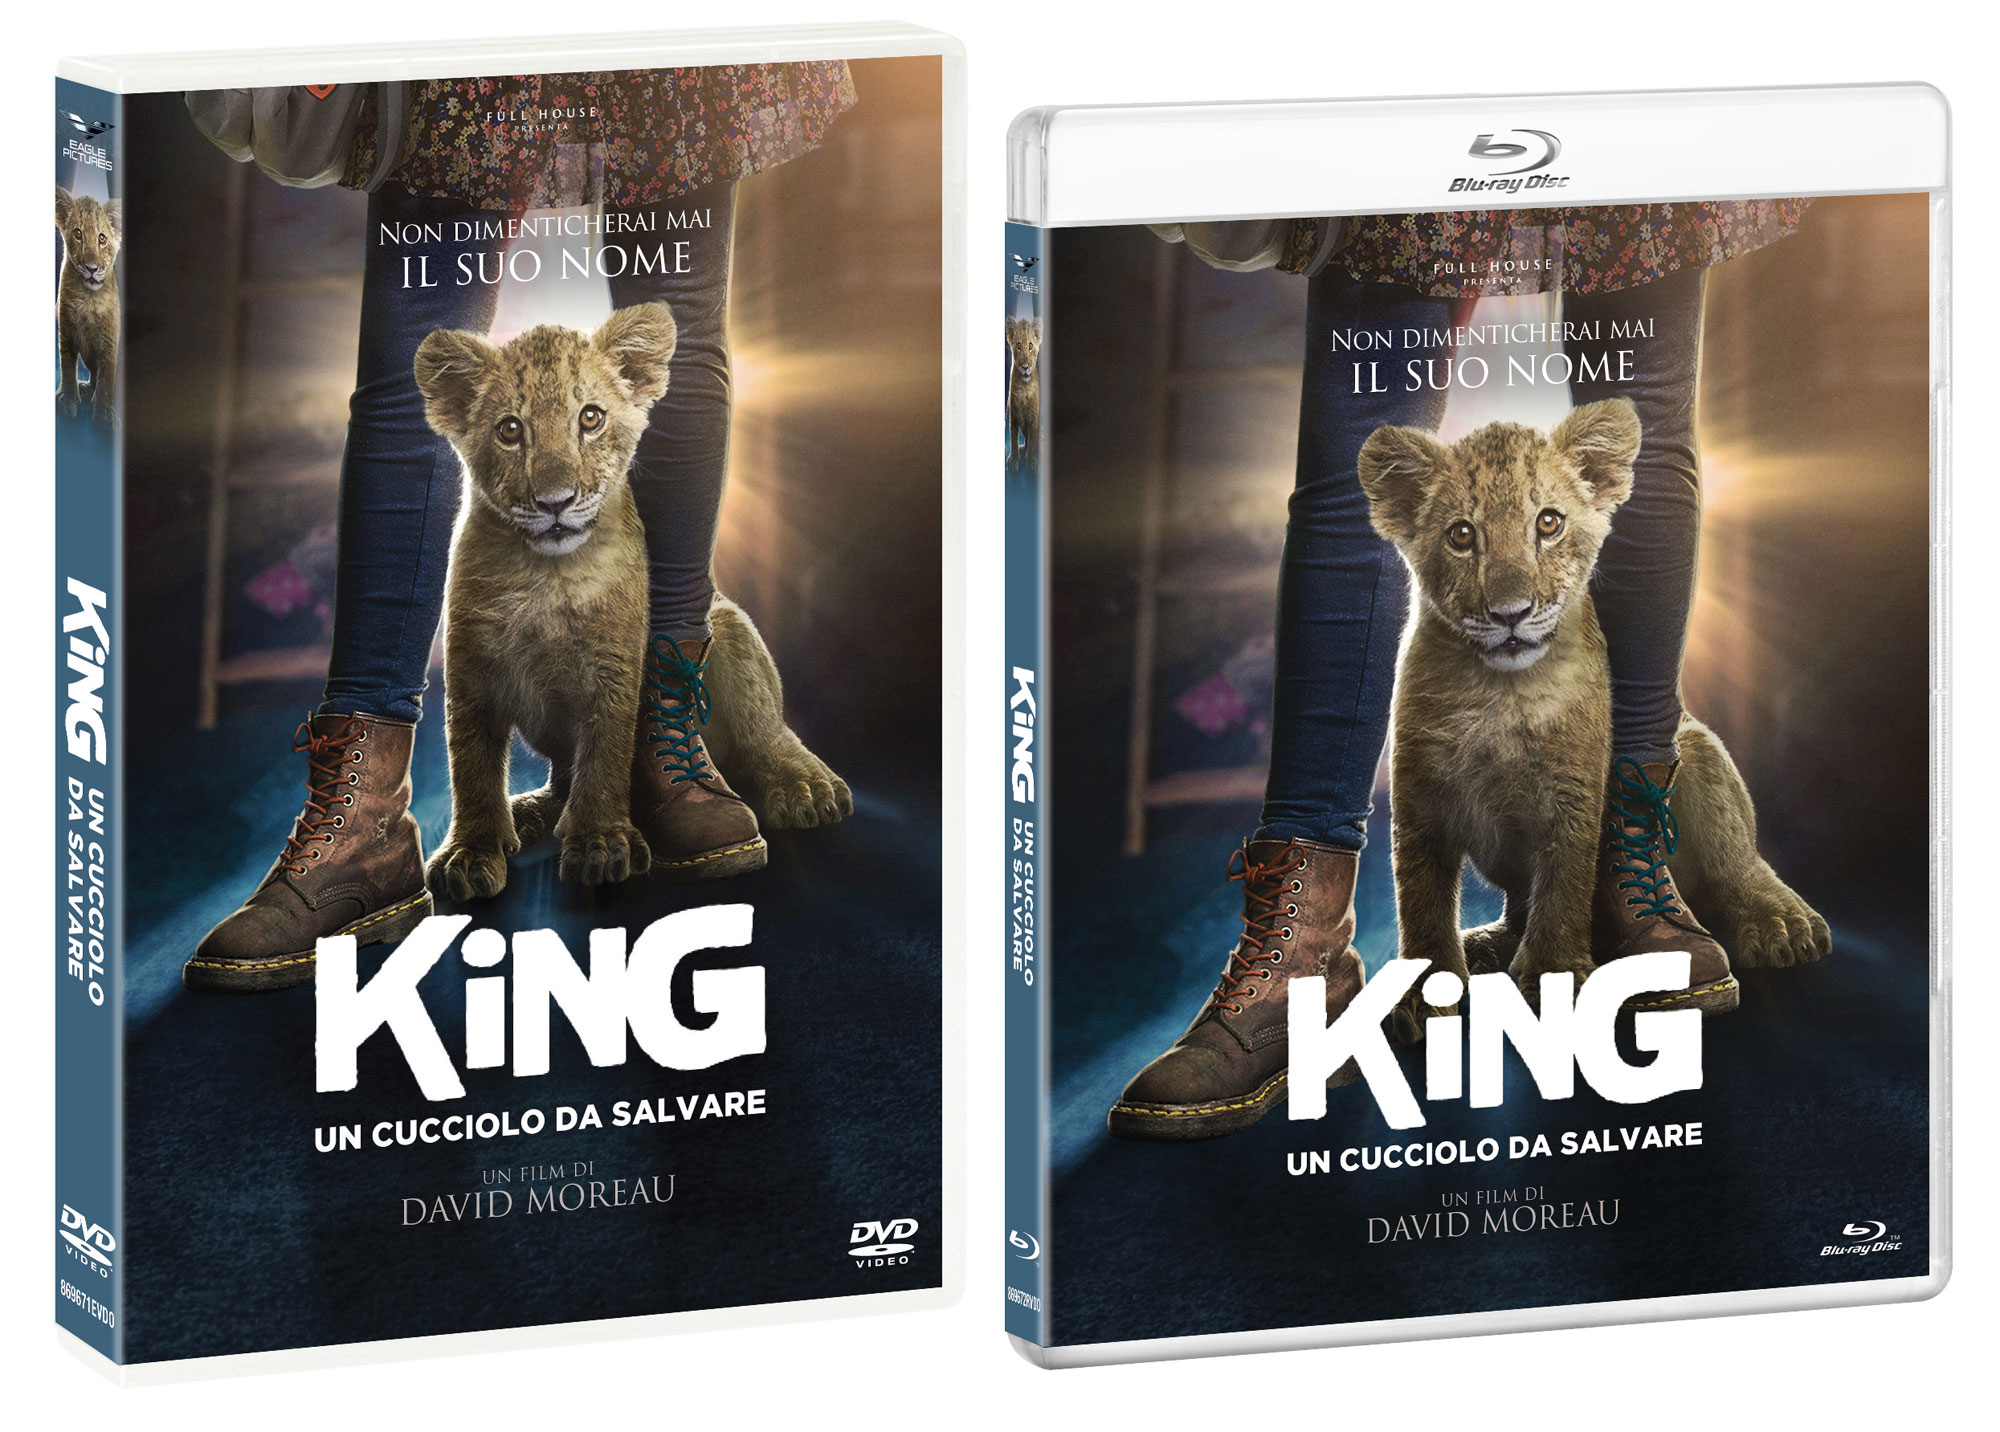 KING - UN CUCCIOLO DA SALVARE in DVD e Blu-ray